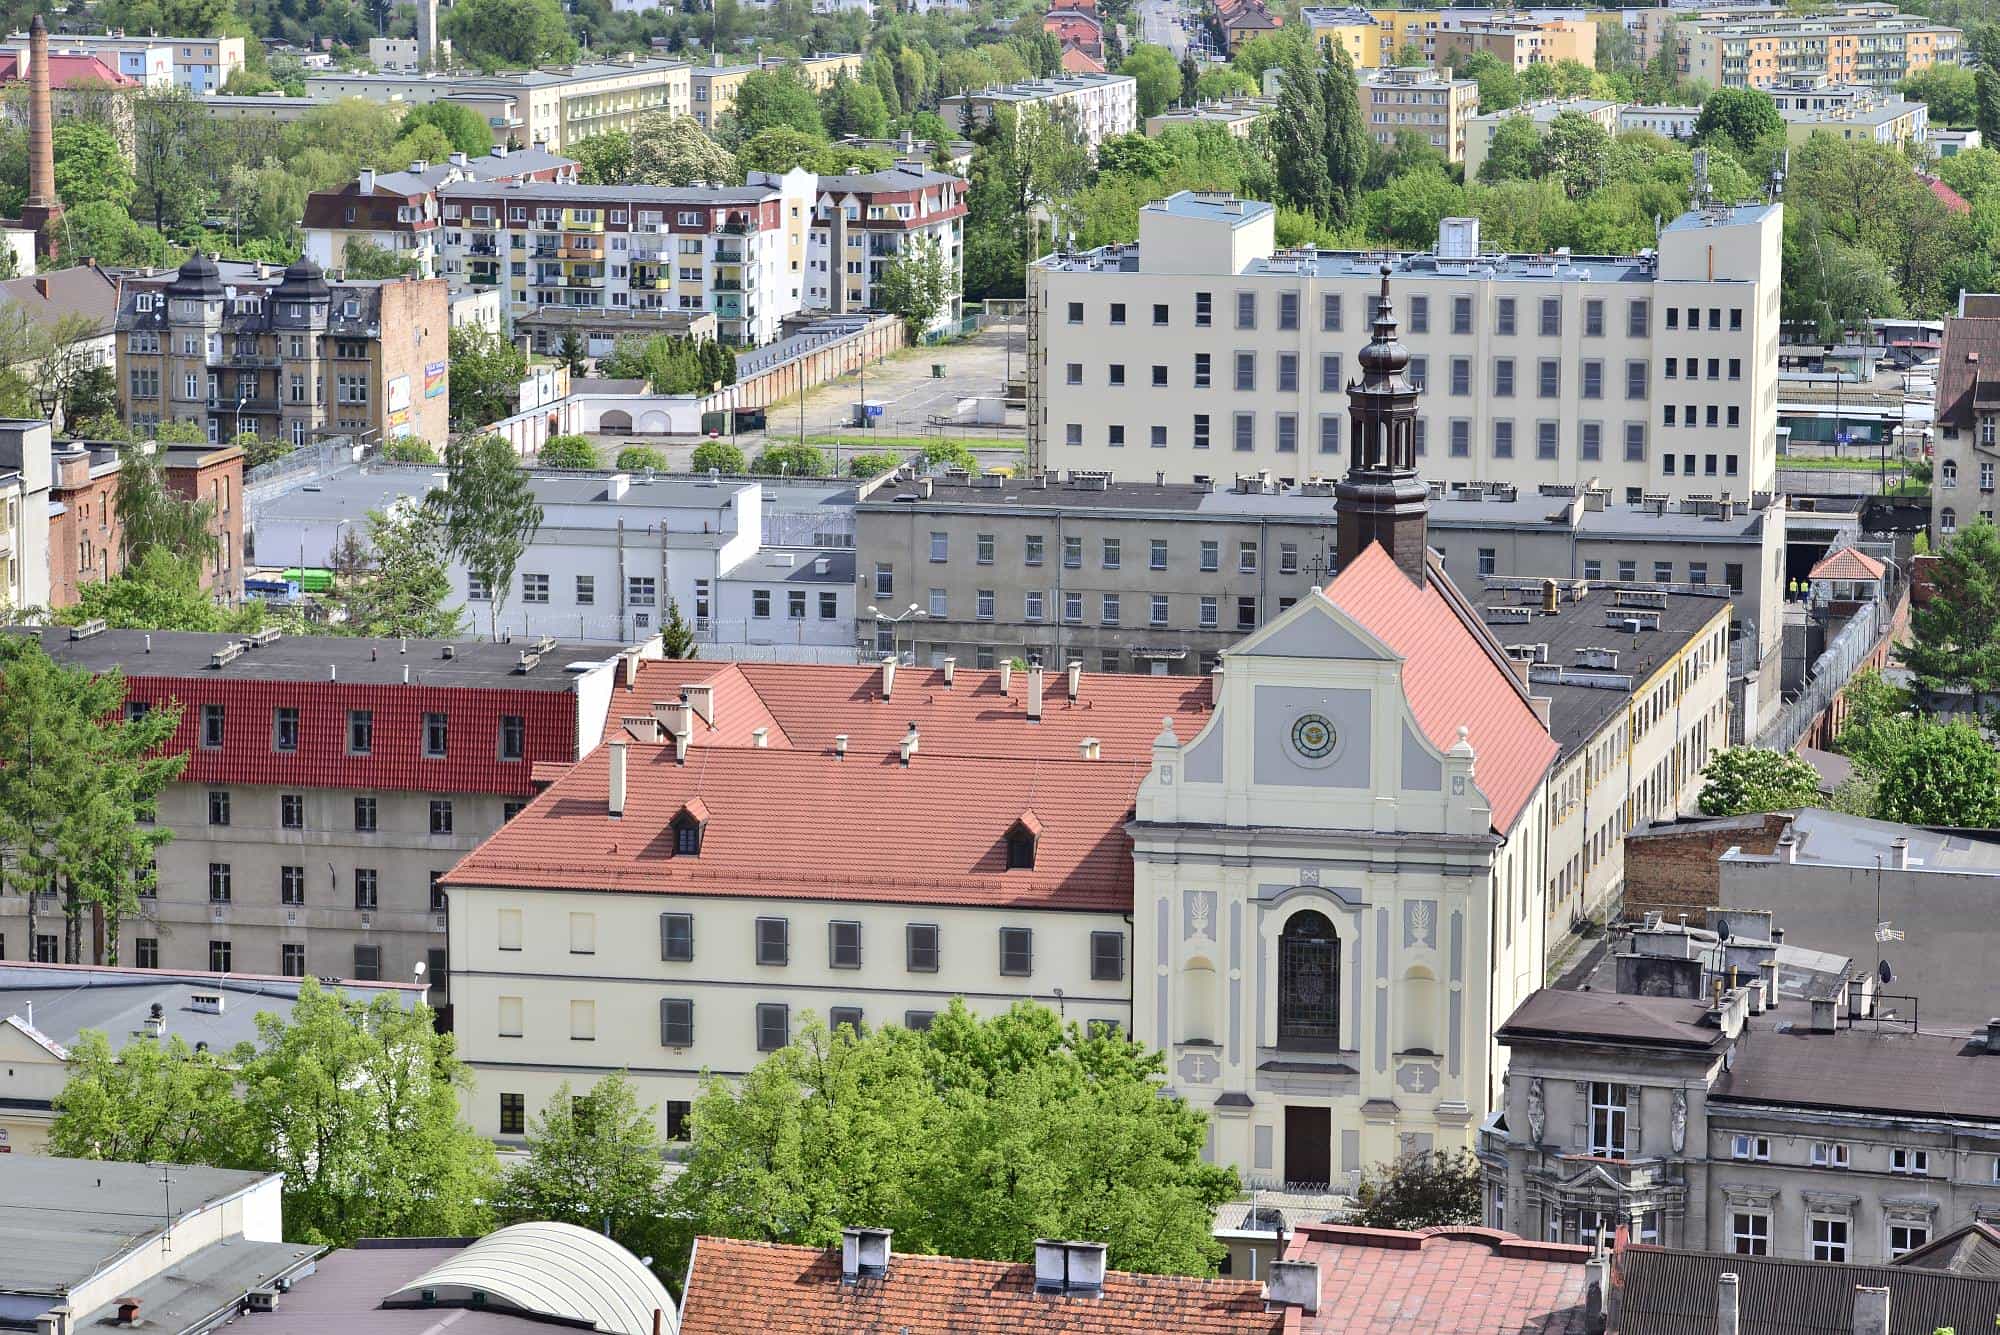 Zwiedzanie klasztoru i kościoła Reformatów 3 maja 2017